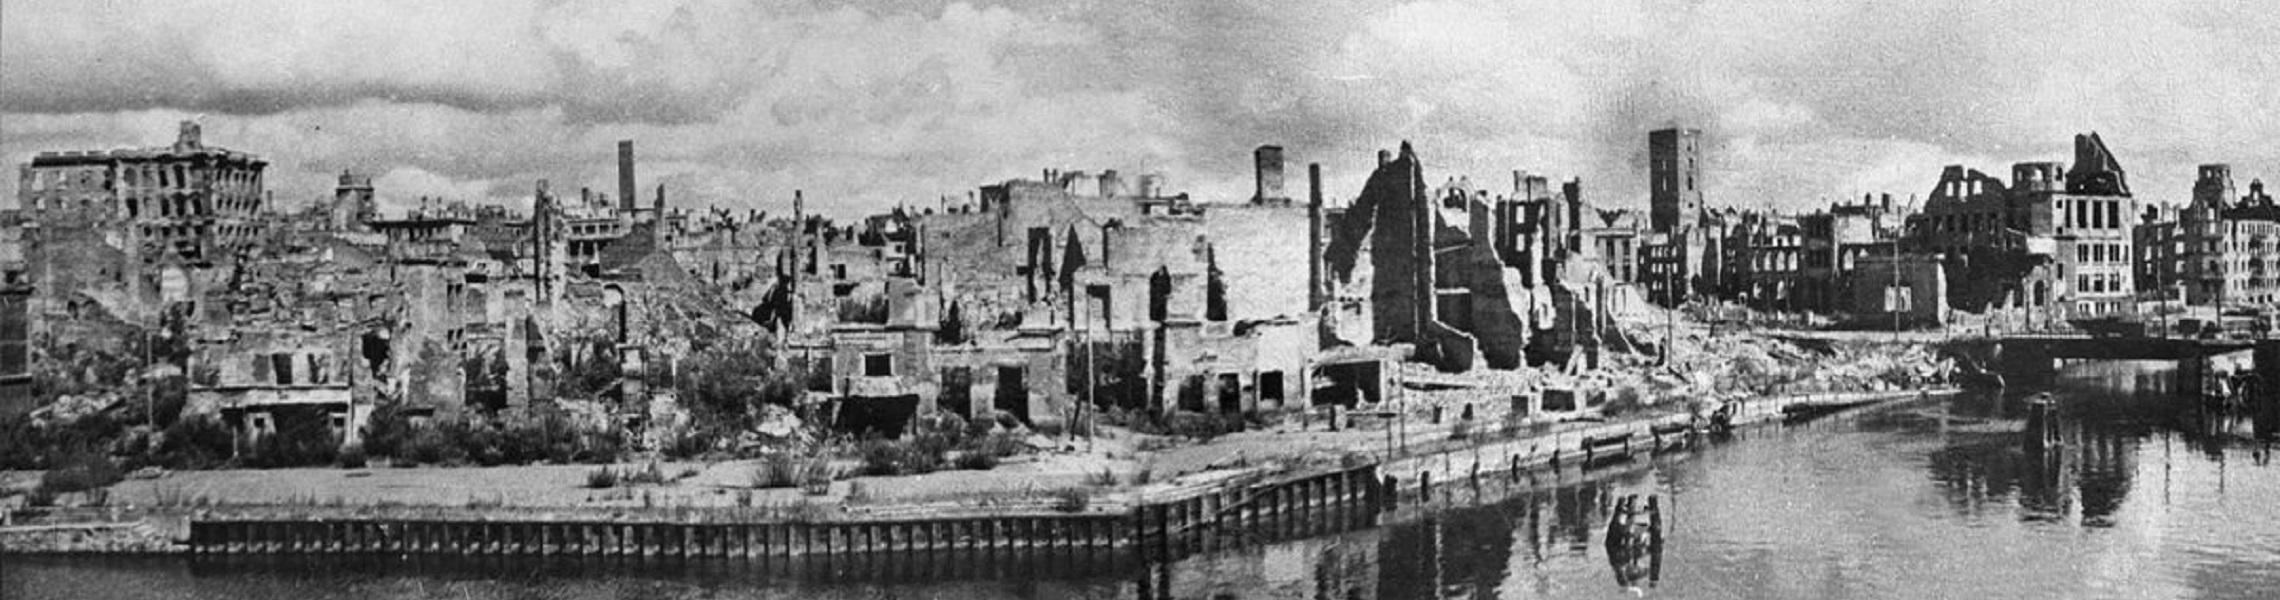 Кенигсберг город 1945. Калининград после войны 1945. Кенигсберг 1945. Калининград после войны 1945 год.